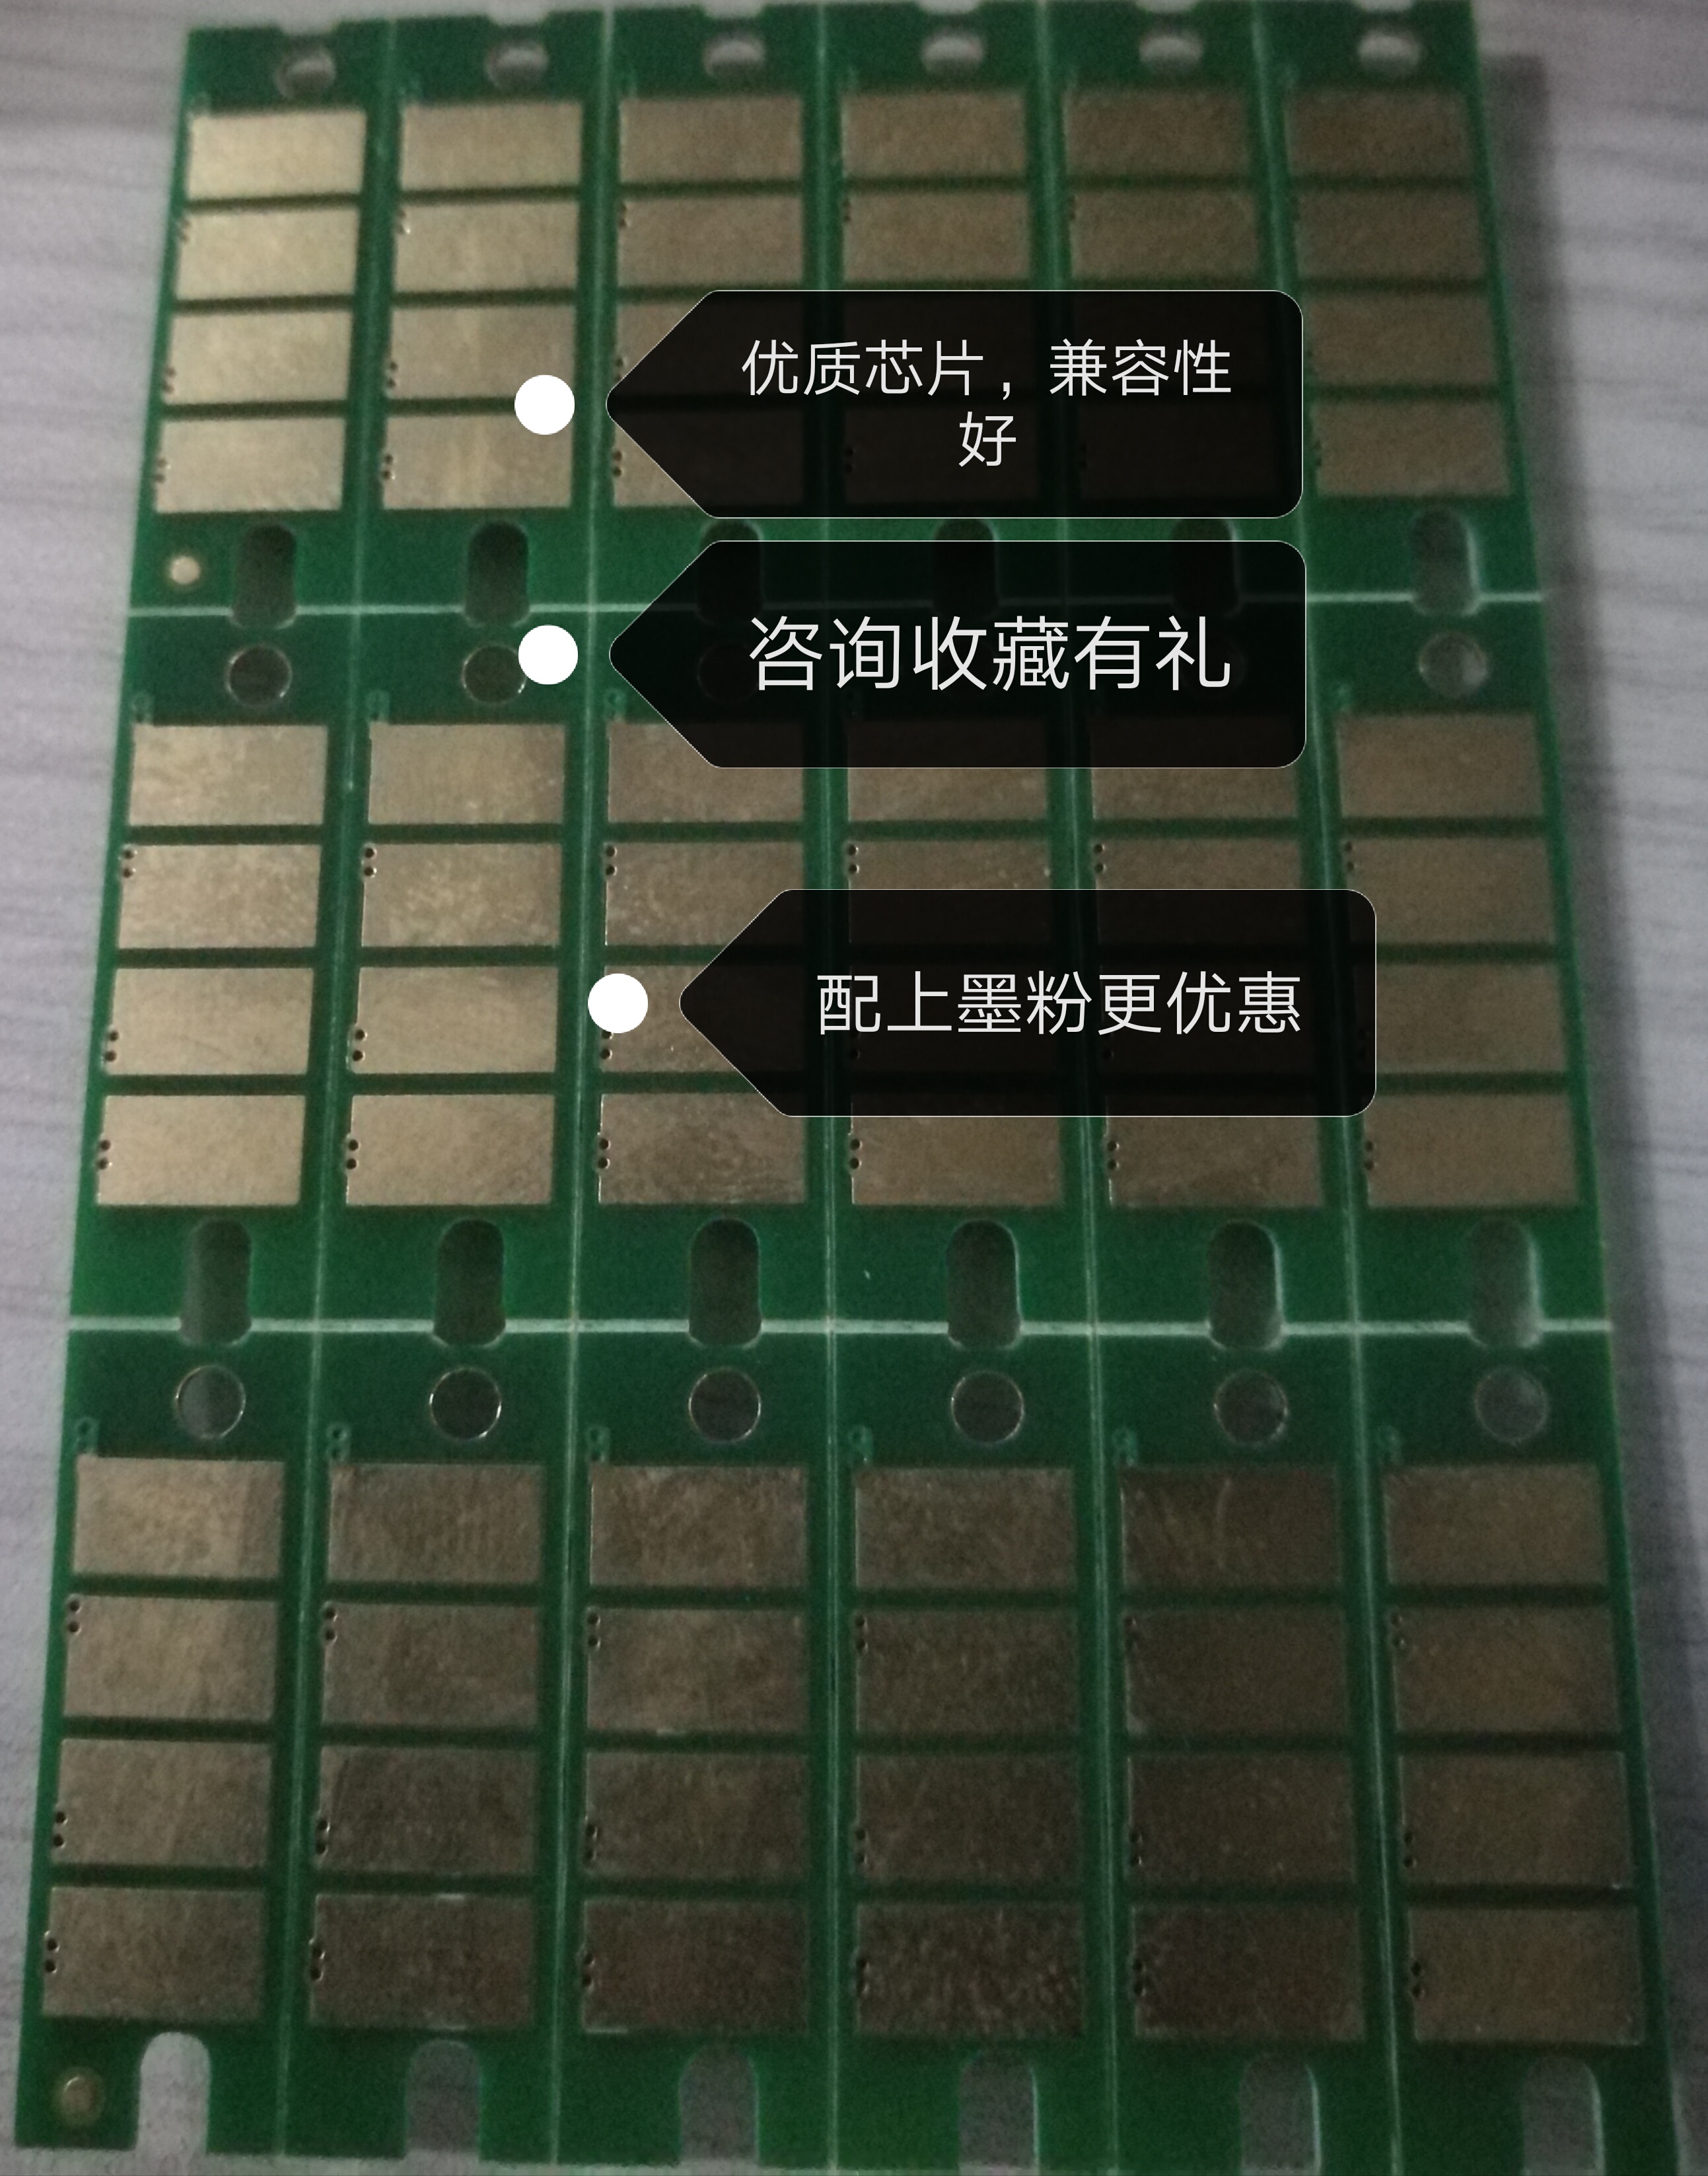 Thích hợp cho chip Lenovo LD228 M7218 LJ2218 7208 M7208W hộp mực máy in LJ2208W - Phụ kiện máy in